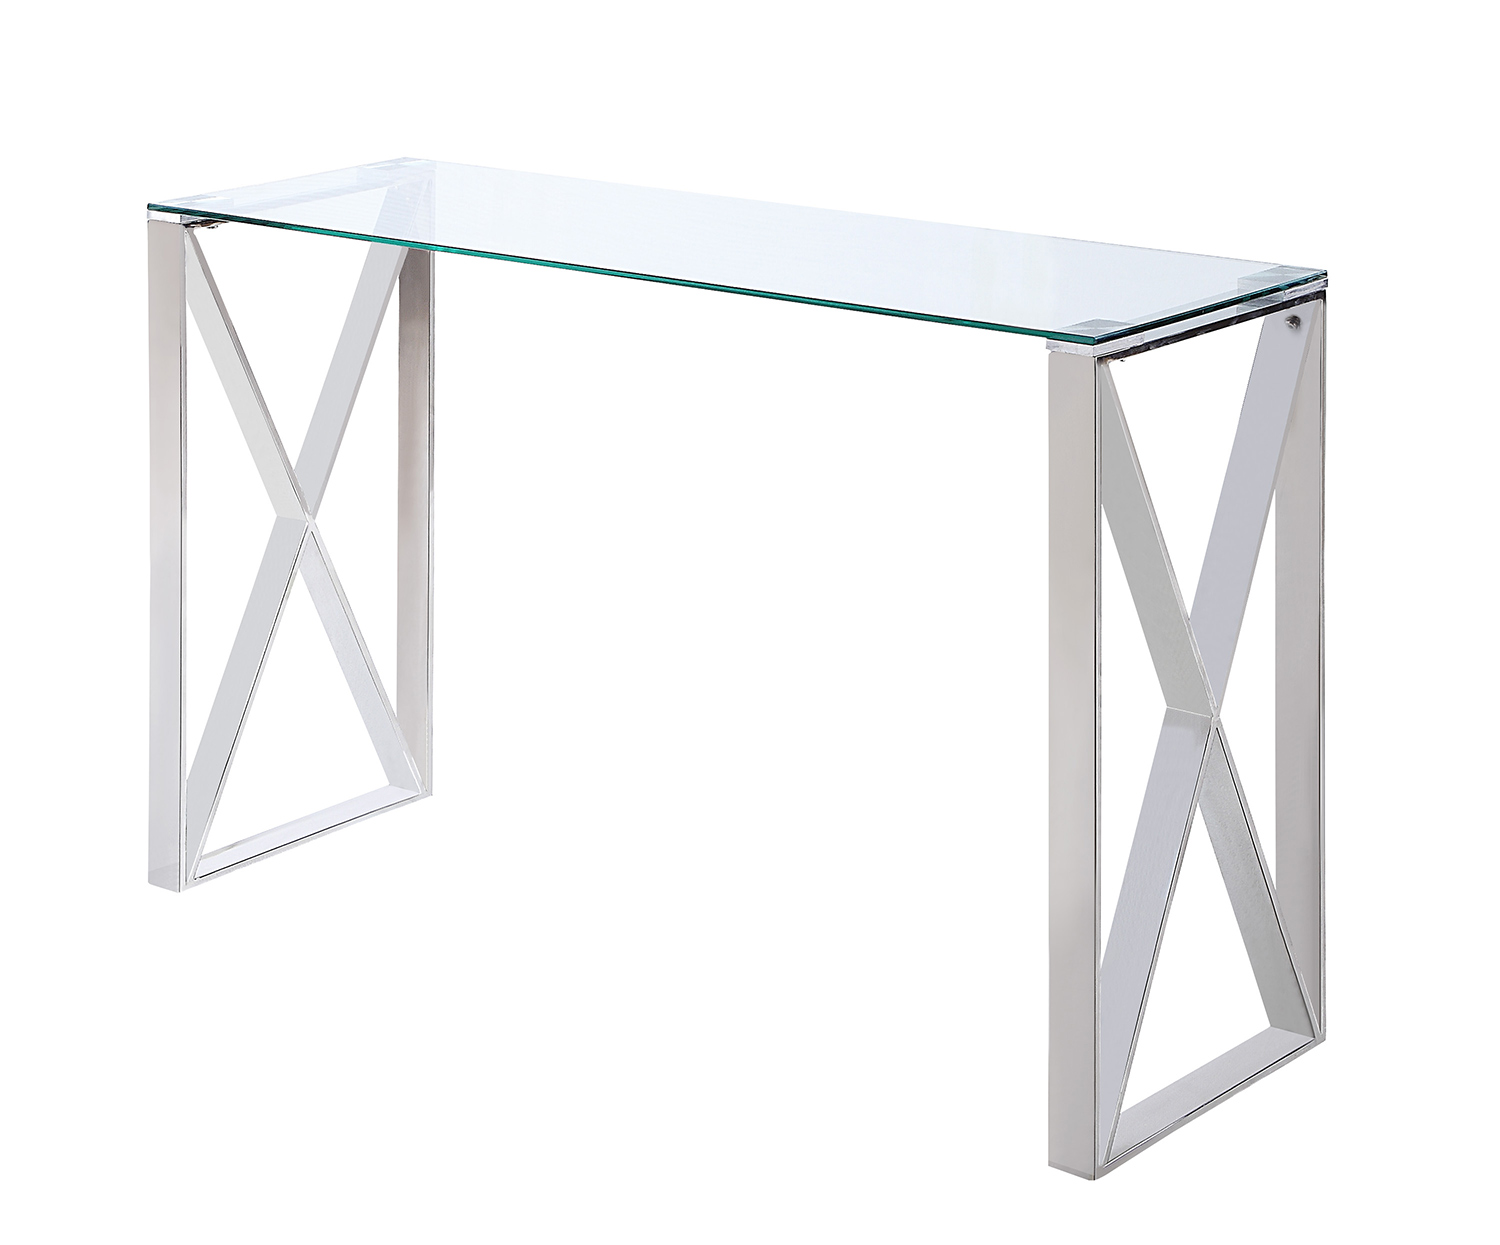 Homelegance Rush Sofa Table with Glass Top - Polished Chrome